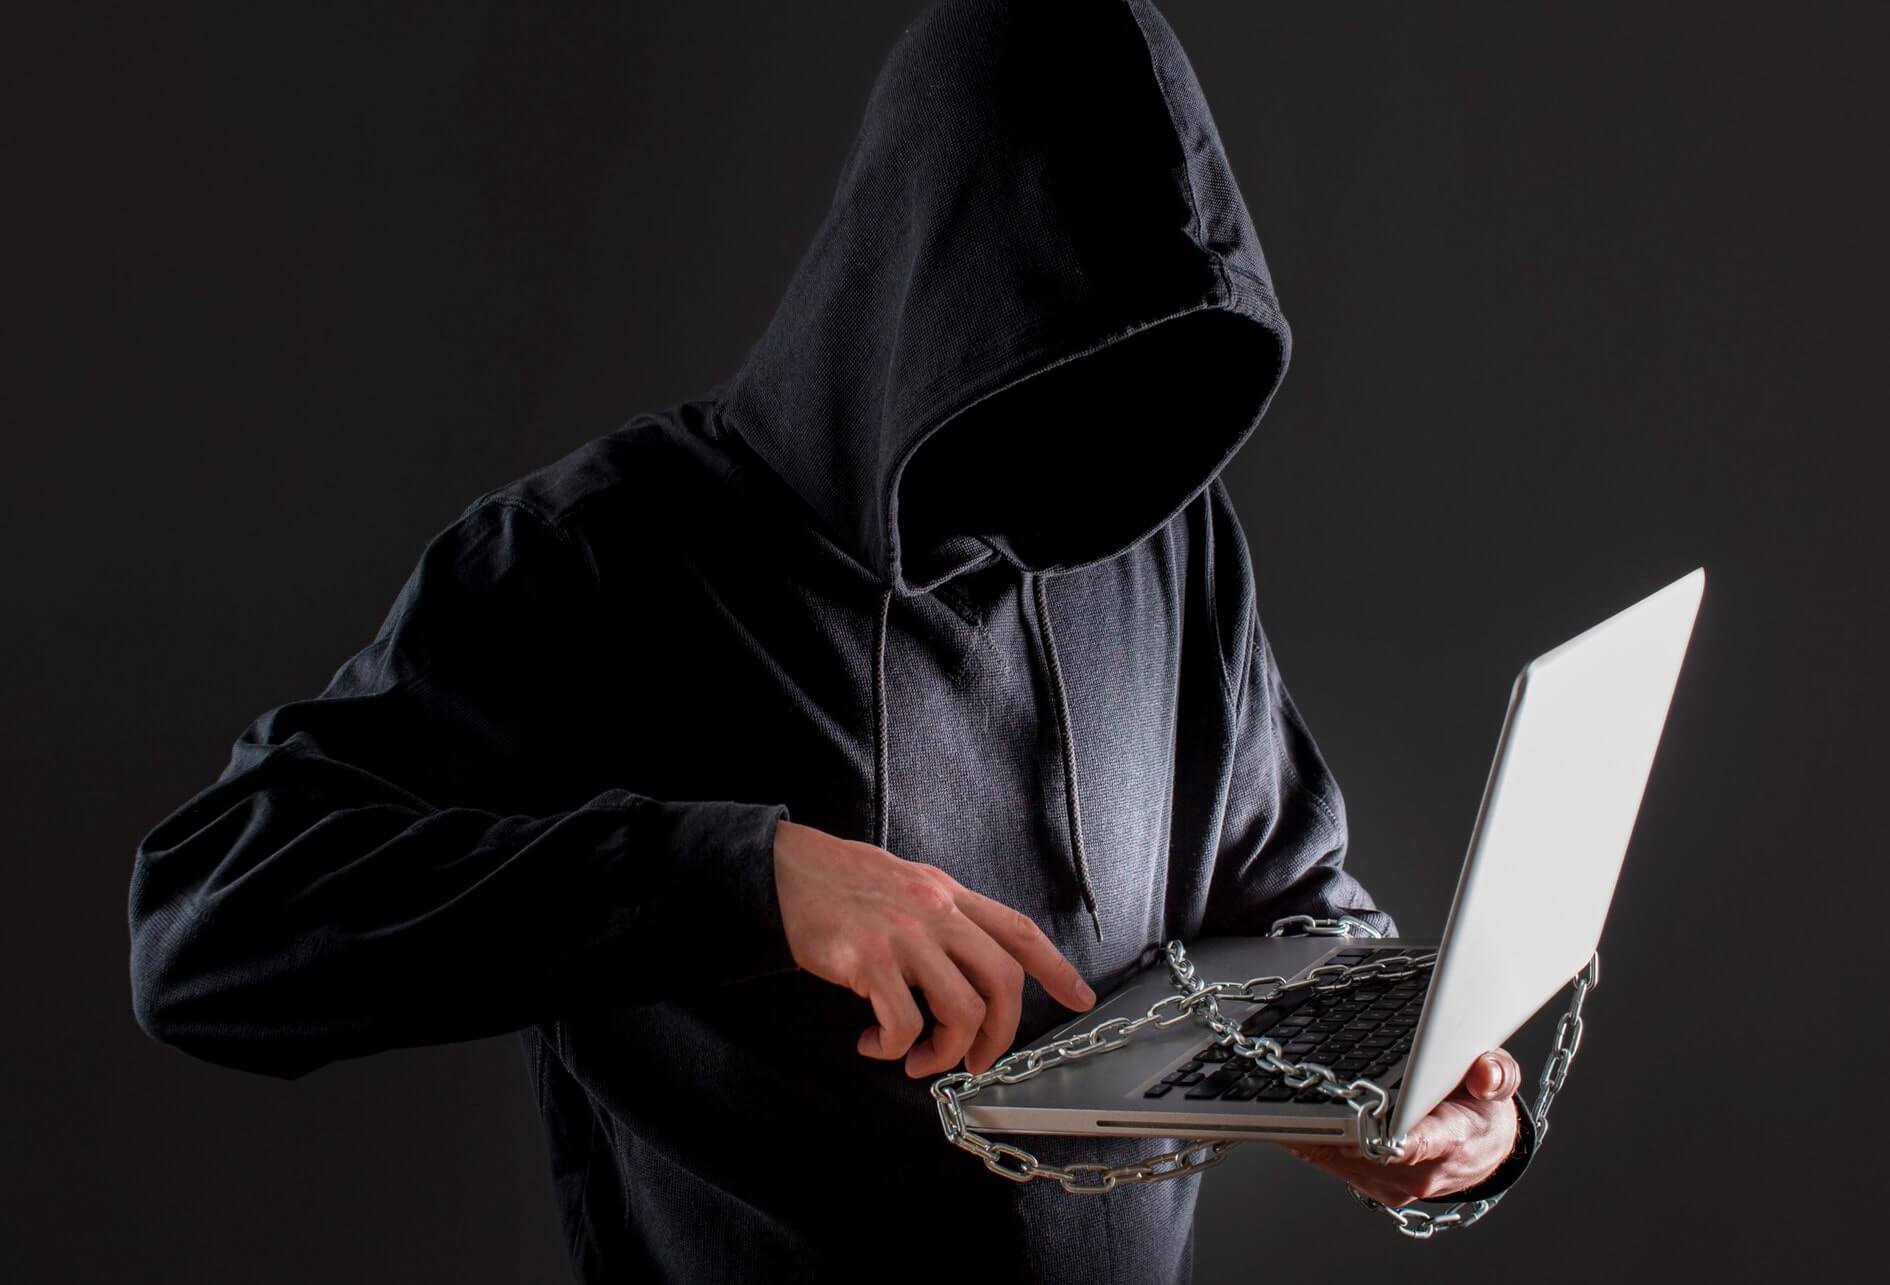 Sur fond sombre, un pirate avec capuche manipule un ordinateur couvert de chaînes.